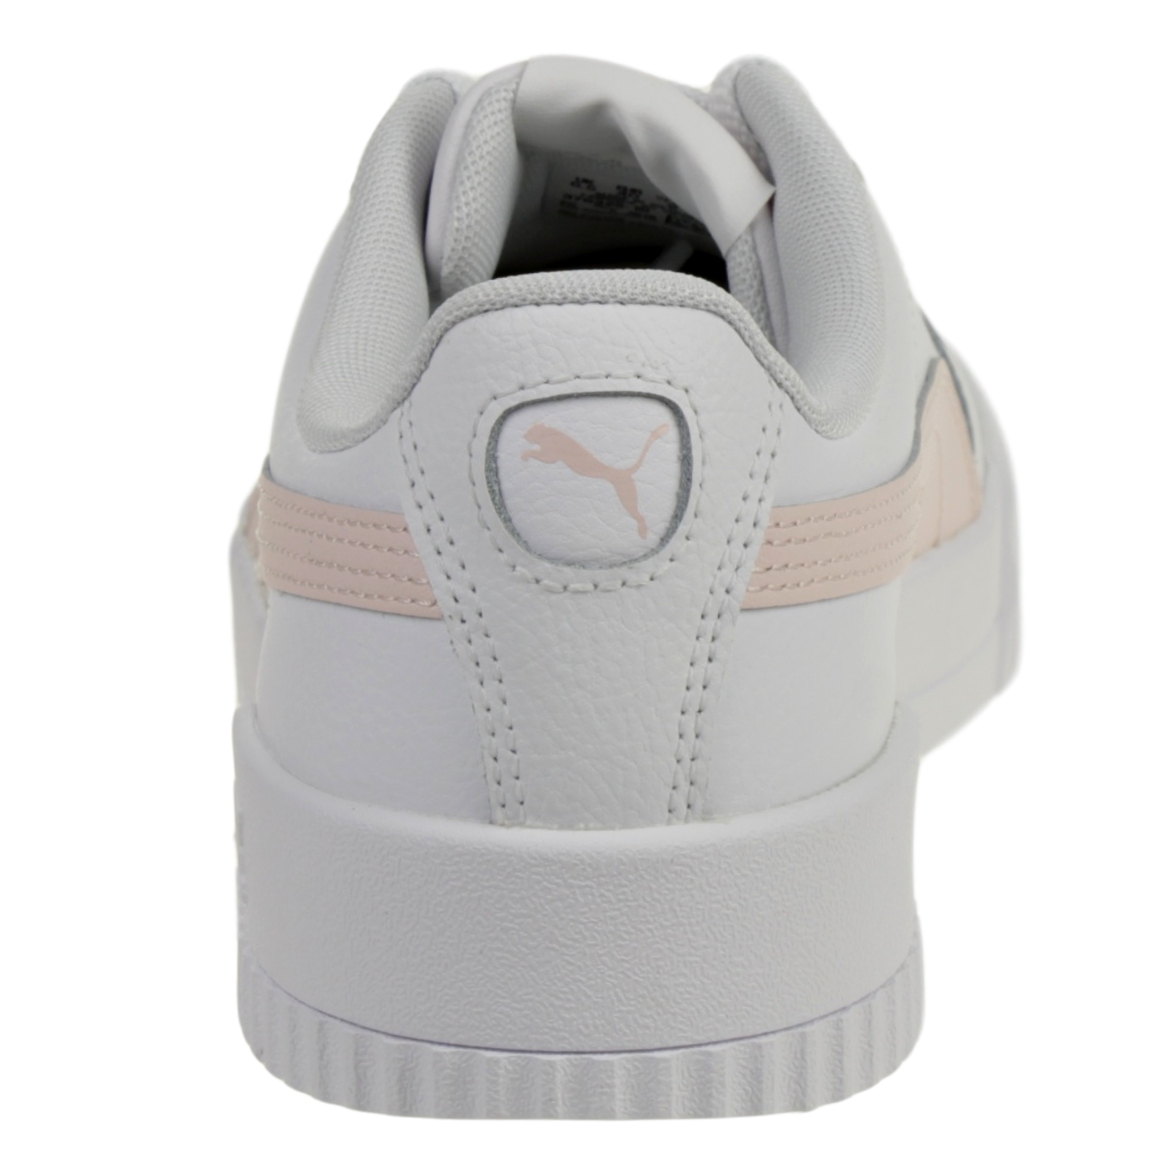 Puma Carina L Damen Sneaker Leder Schuhe 370325 Weiß / Rosa